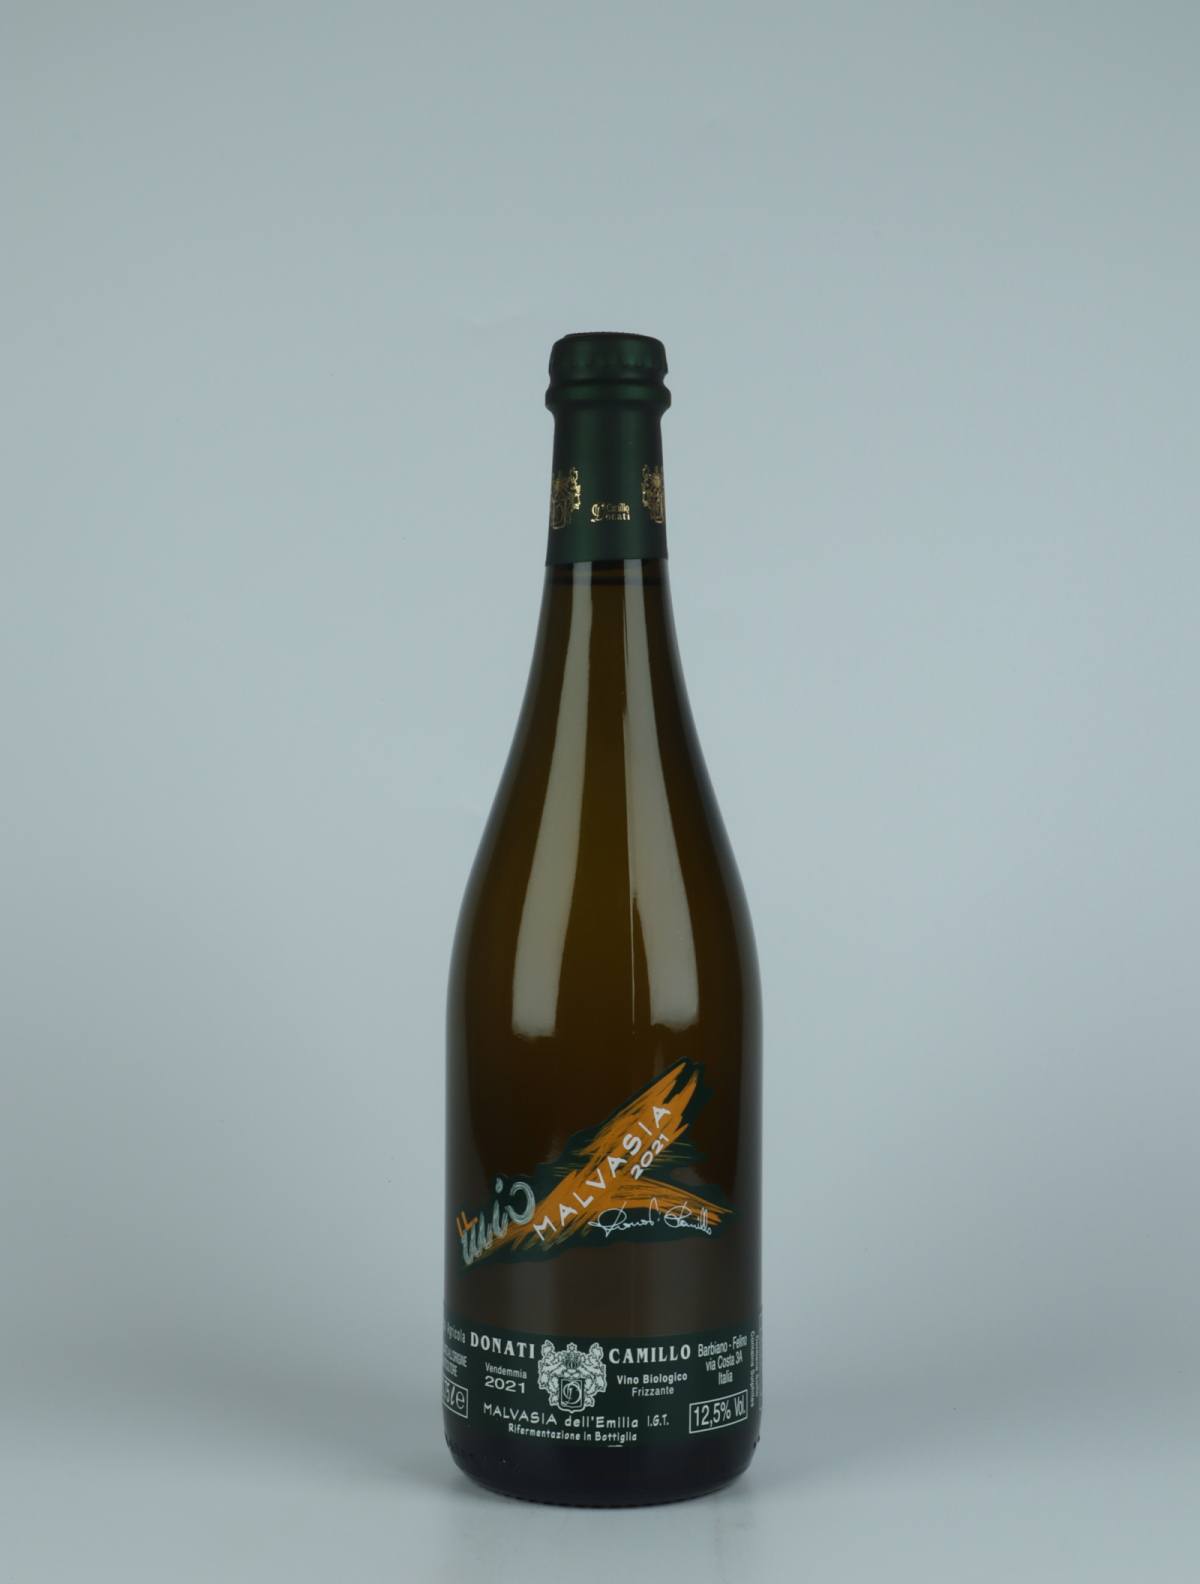 A bottle 2021 Malvasia Frizzante Sparkling from Camillo Donati, Emilia-Romagna in Italy